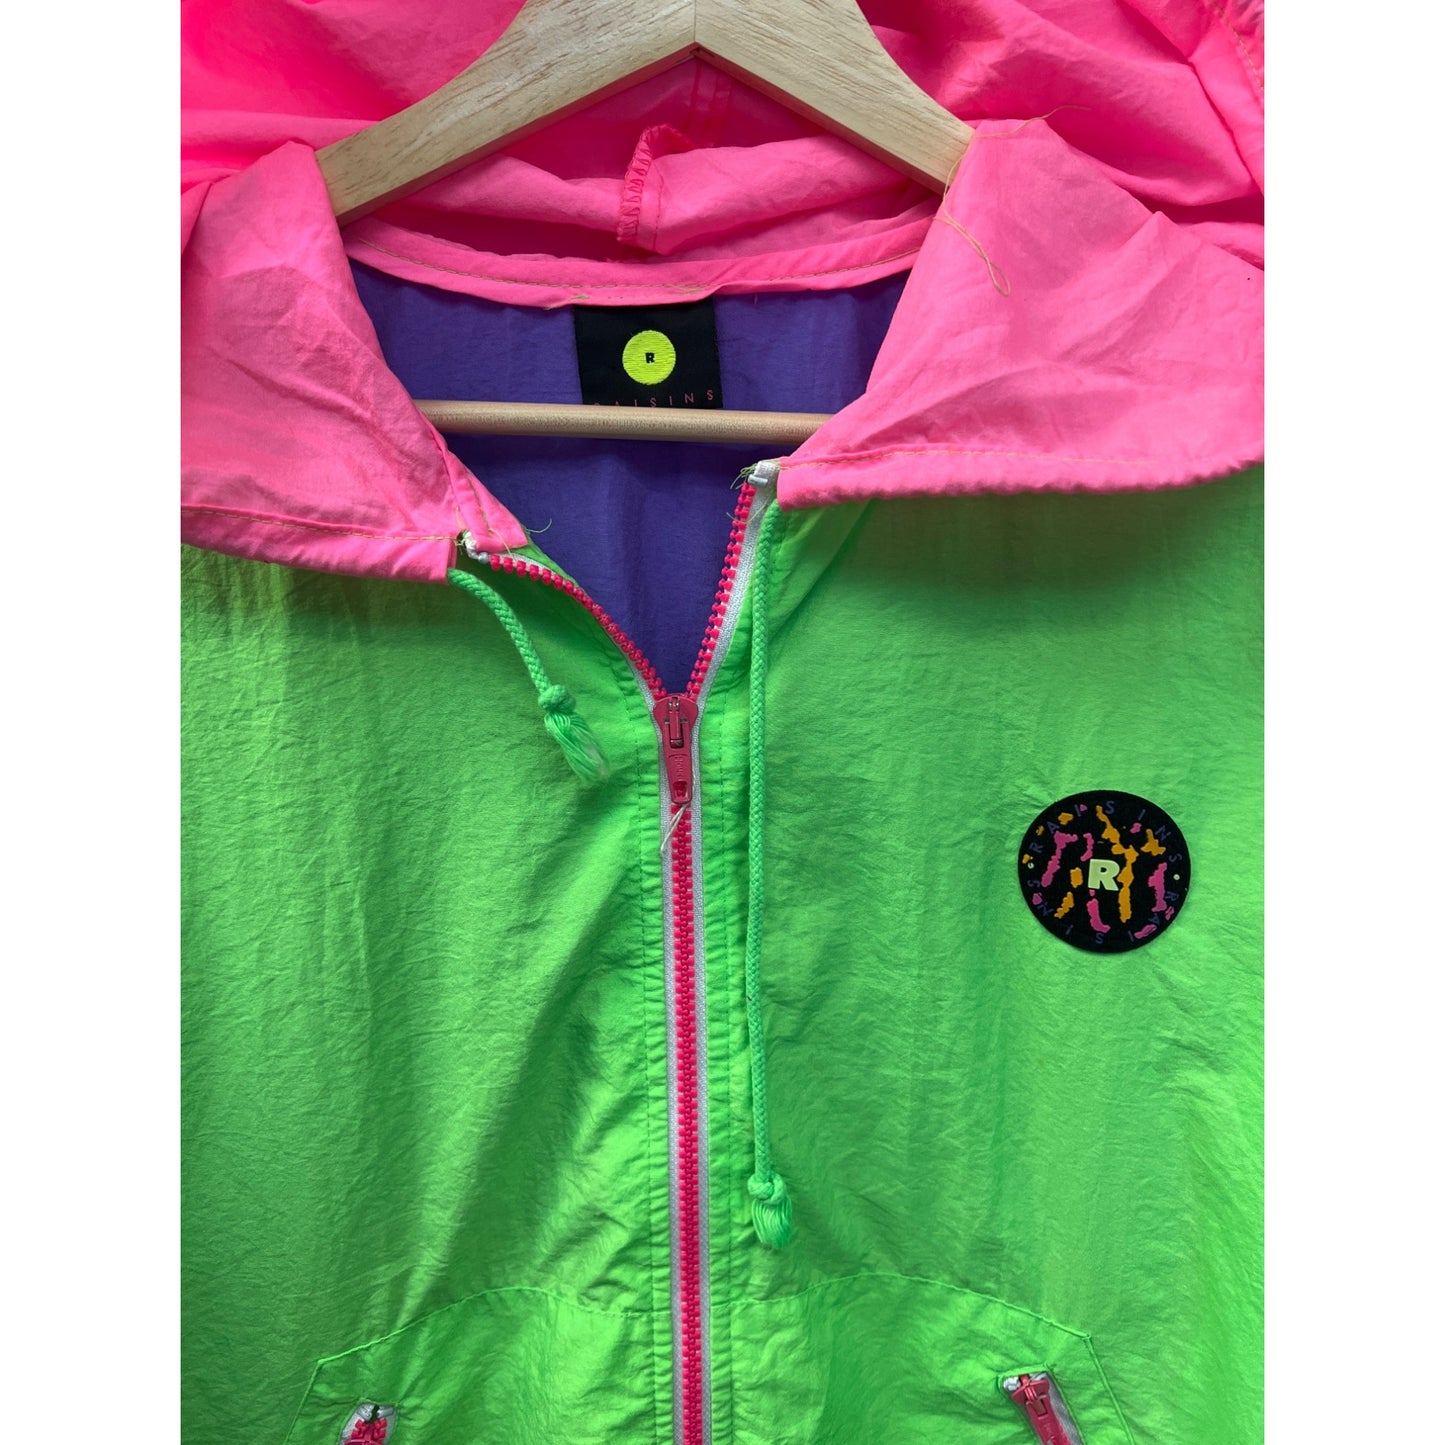 Raisins Vintage 80's Neon Colorblock Windbreaker Hoodie Jacket